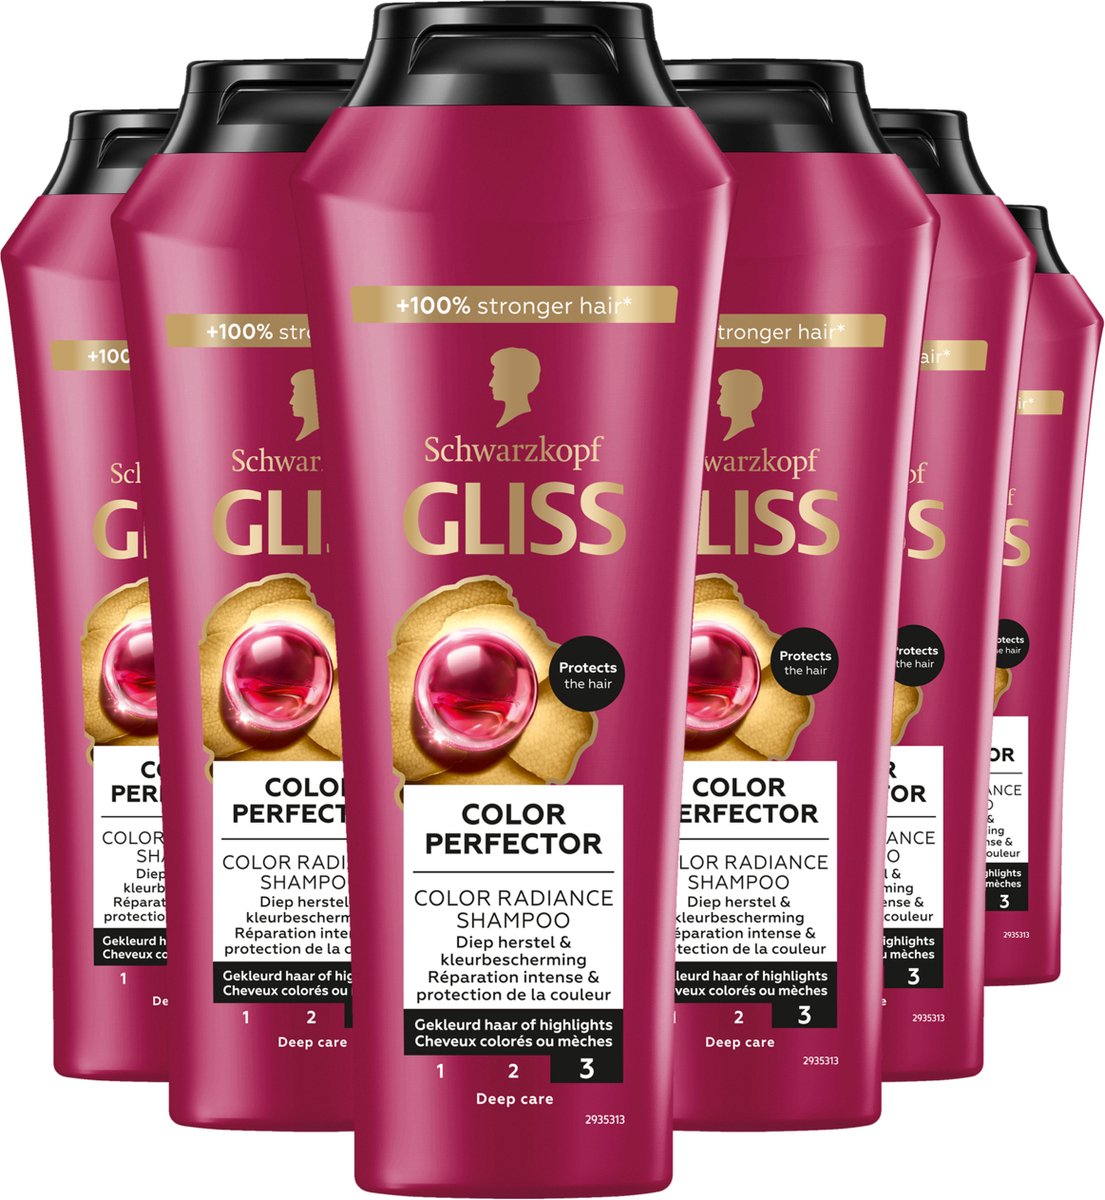 Gliss - Color Protect & Shine - Shampoo - Haarverzorging - 6x 250 ml - Voordeelverpakking